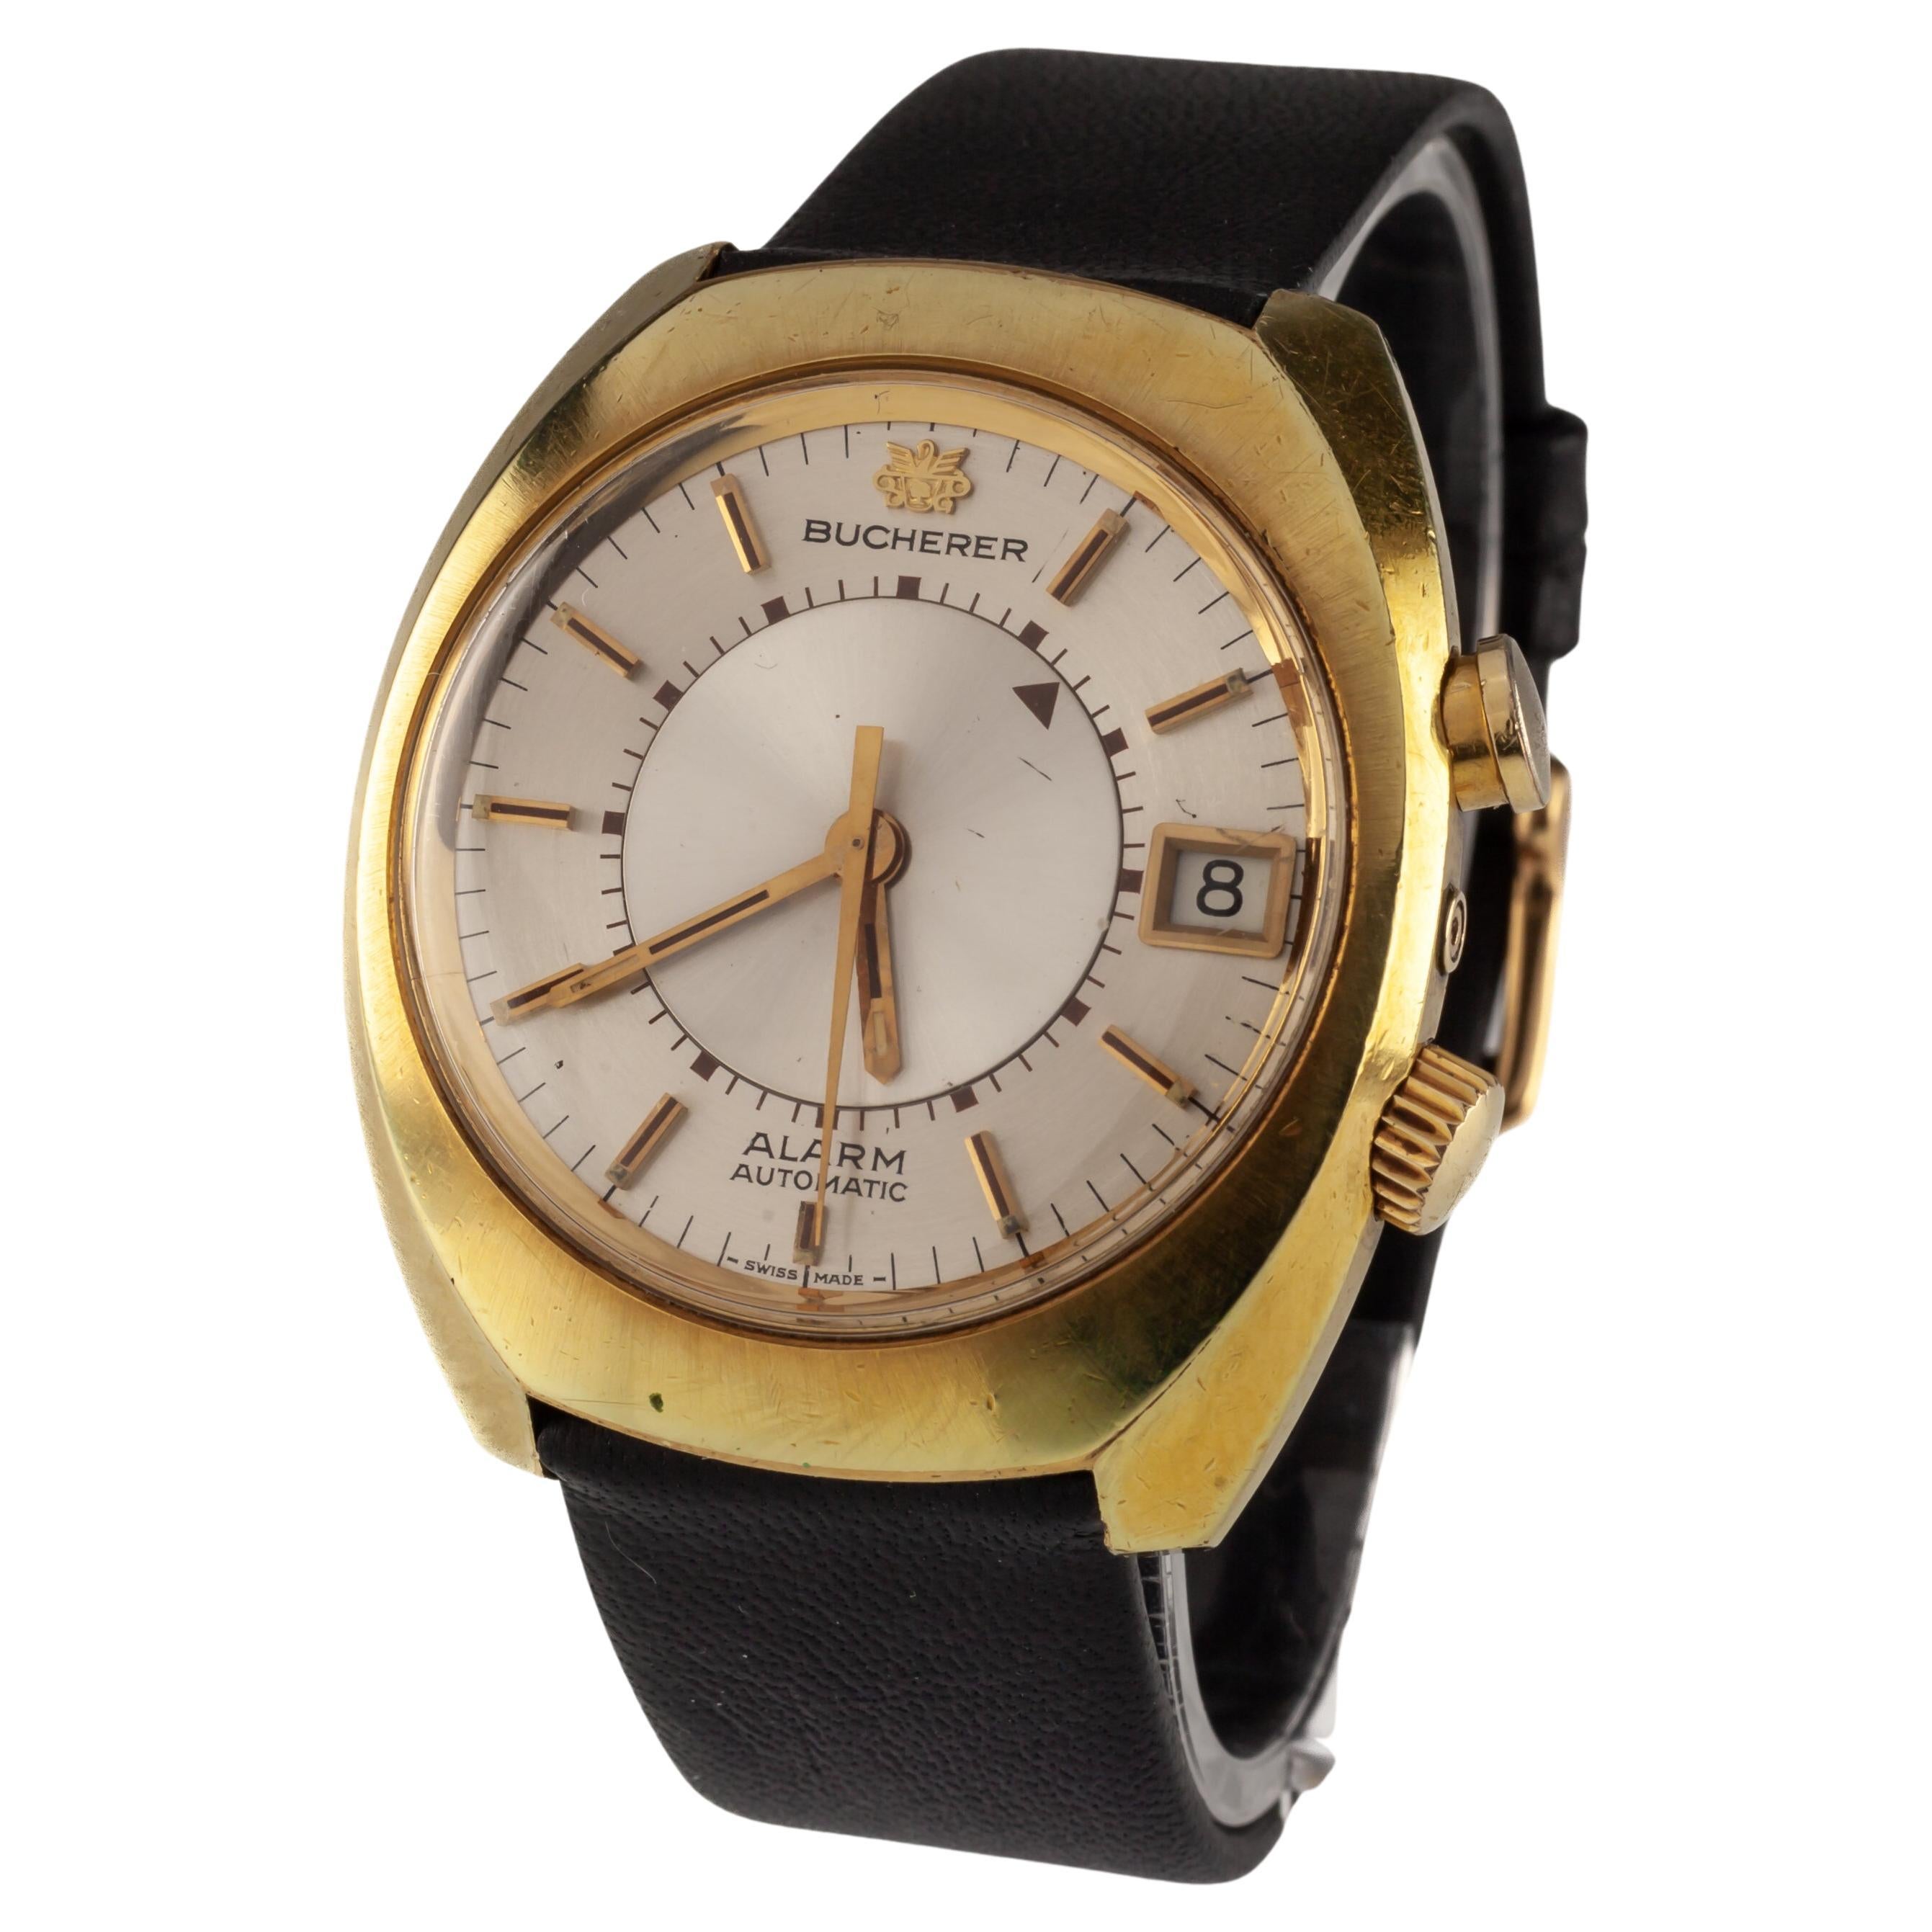 Bucherer Montre d'alarme automatique « Mémomatic » plaquée or avec bracelet en cuir 2980 Date